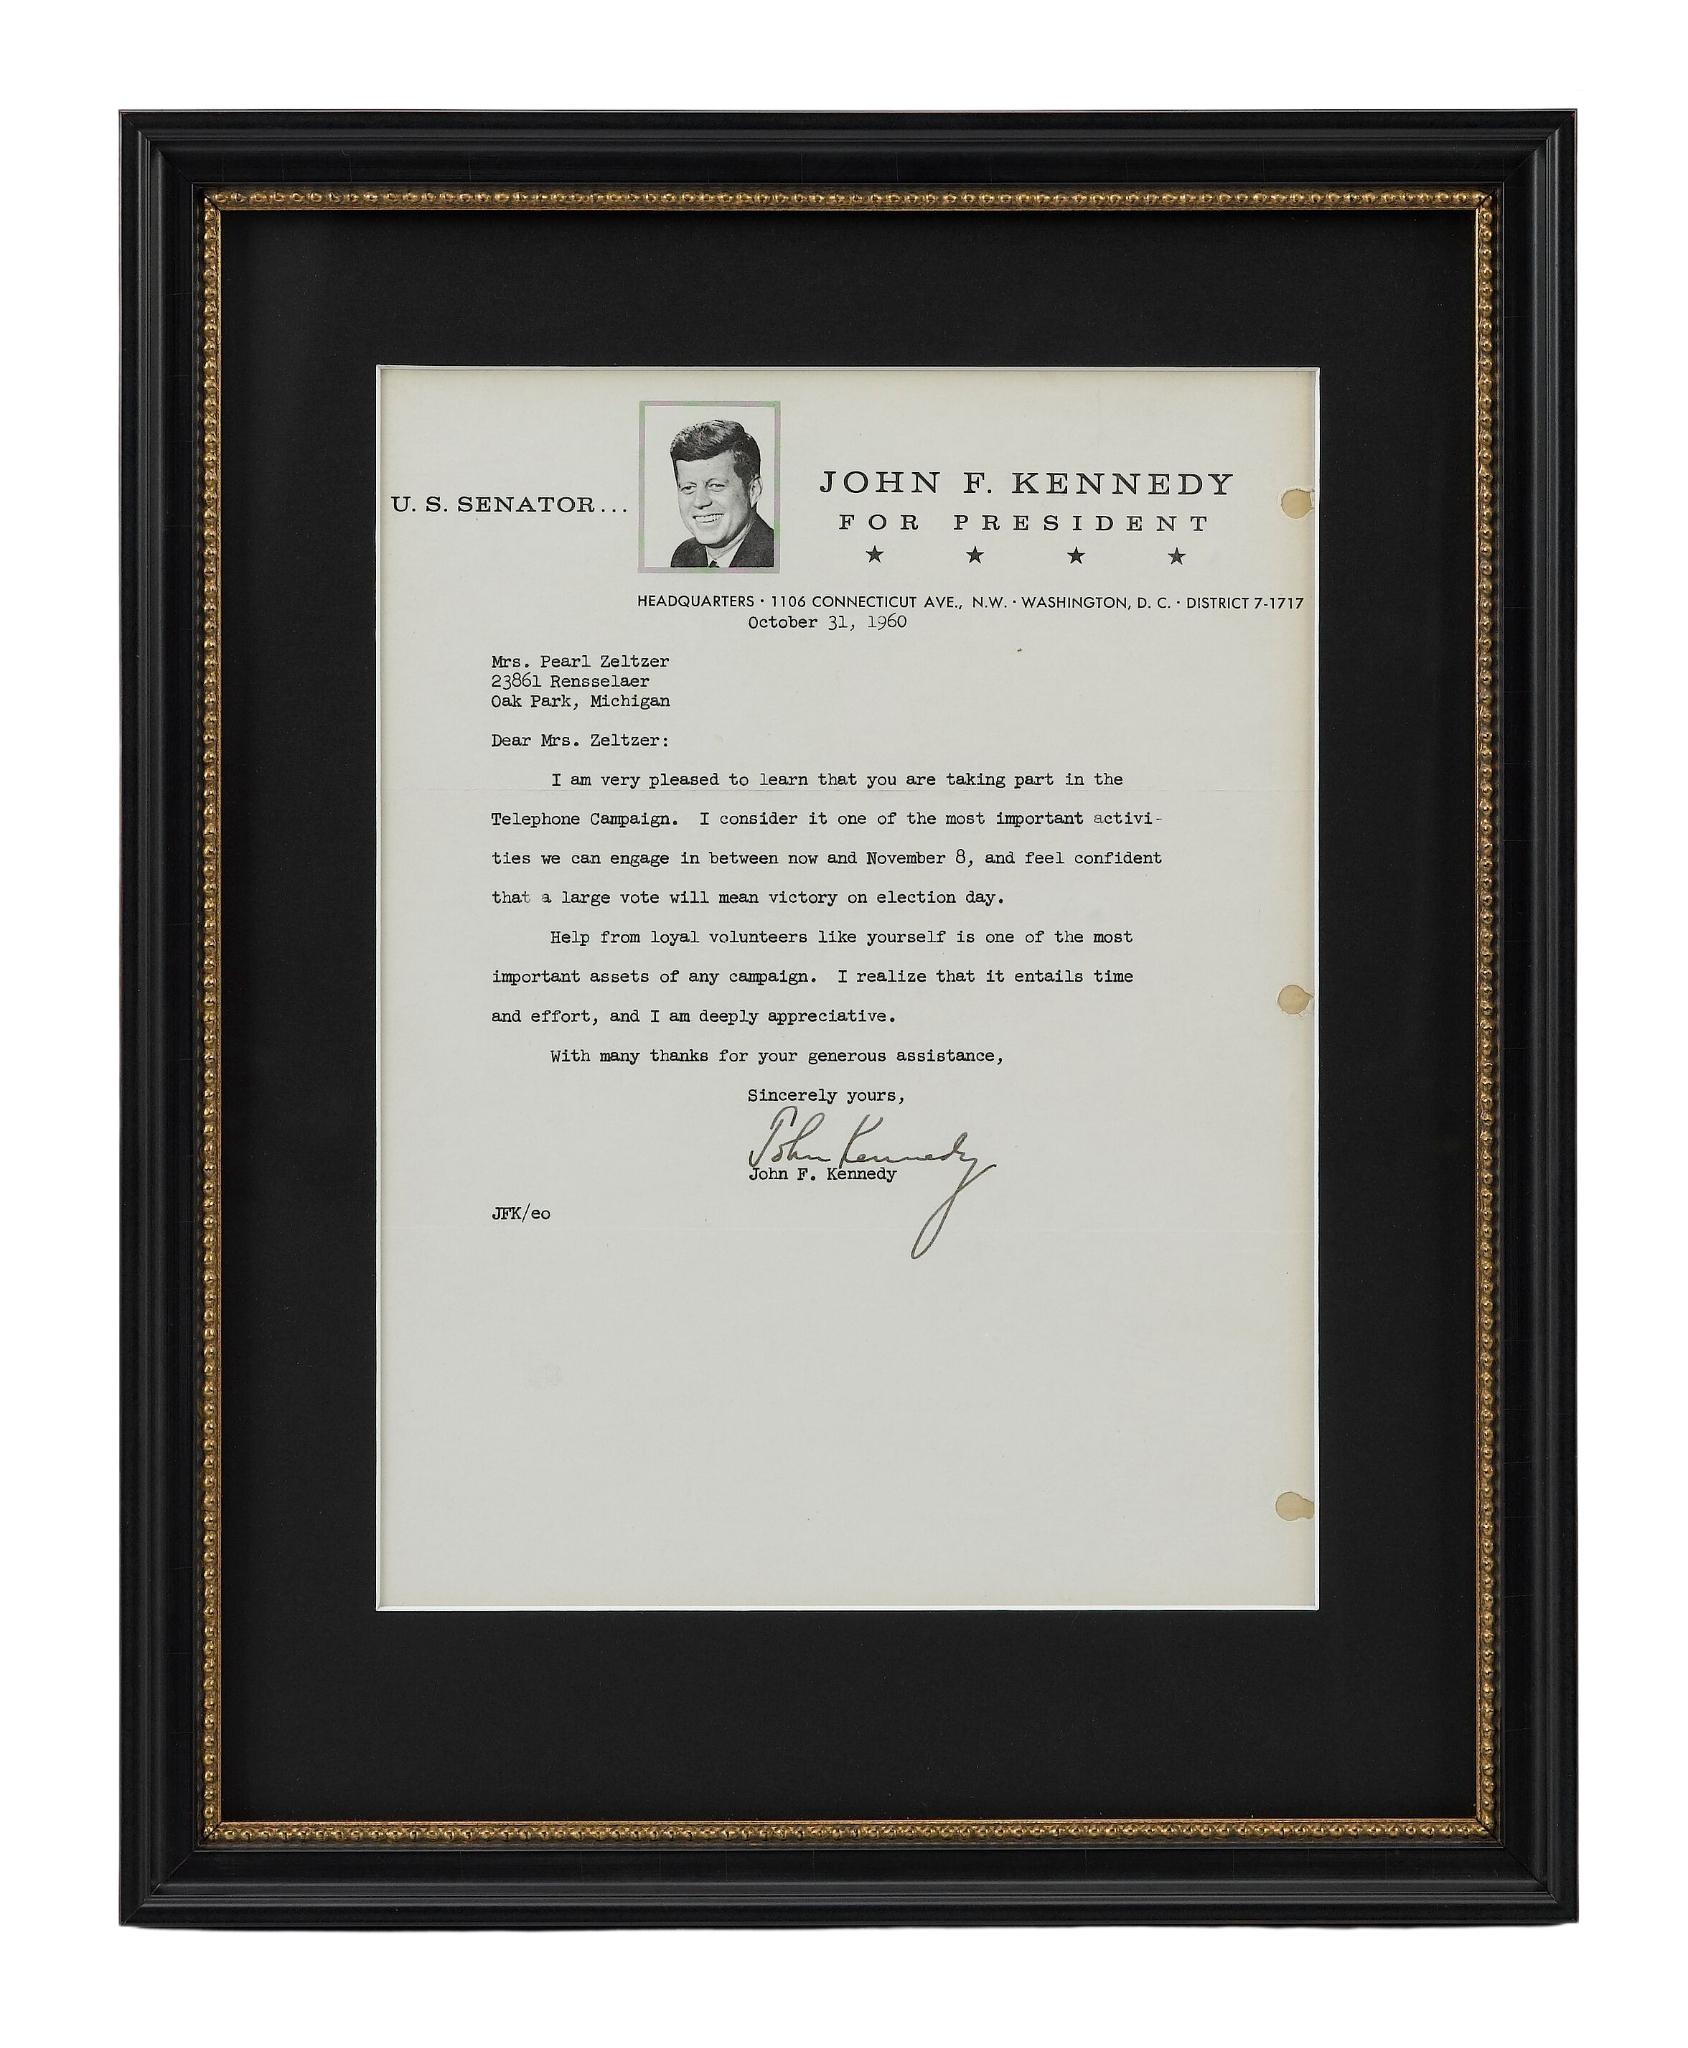 Il s'agit d'une lettre dactylographiée de John F. Kennedy sur du papier à en-tête officiel de sa campagne présidentielle. La lettre est adressée à Mme Pearl Zeltzer, une bénévole de la campagne qui réside à Oak Park, dans le Michigan. Dans cette